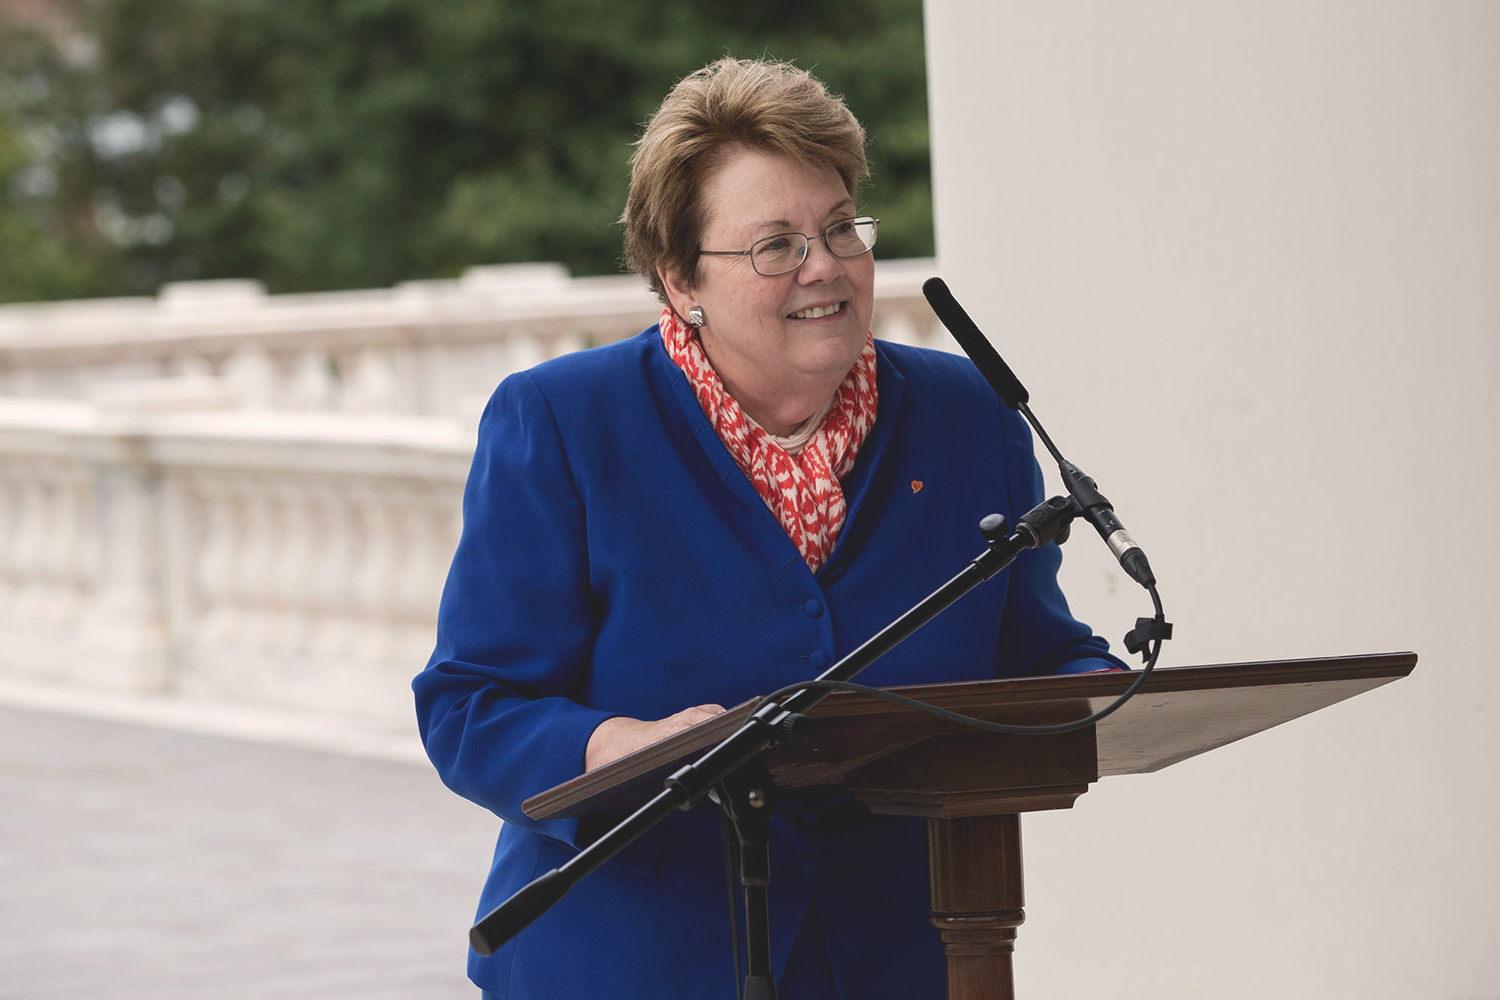 UVA President Teresa A. Sullivan speaking at a podium